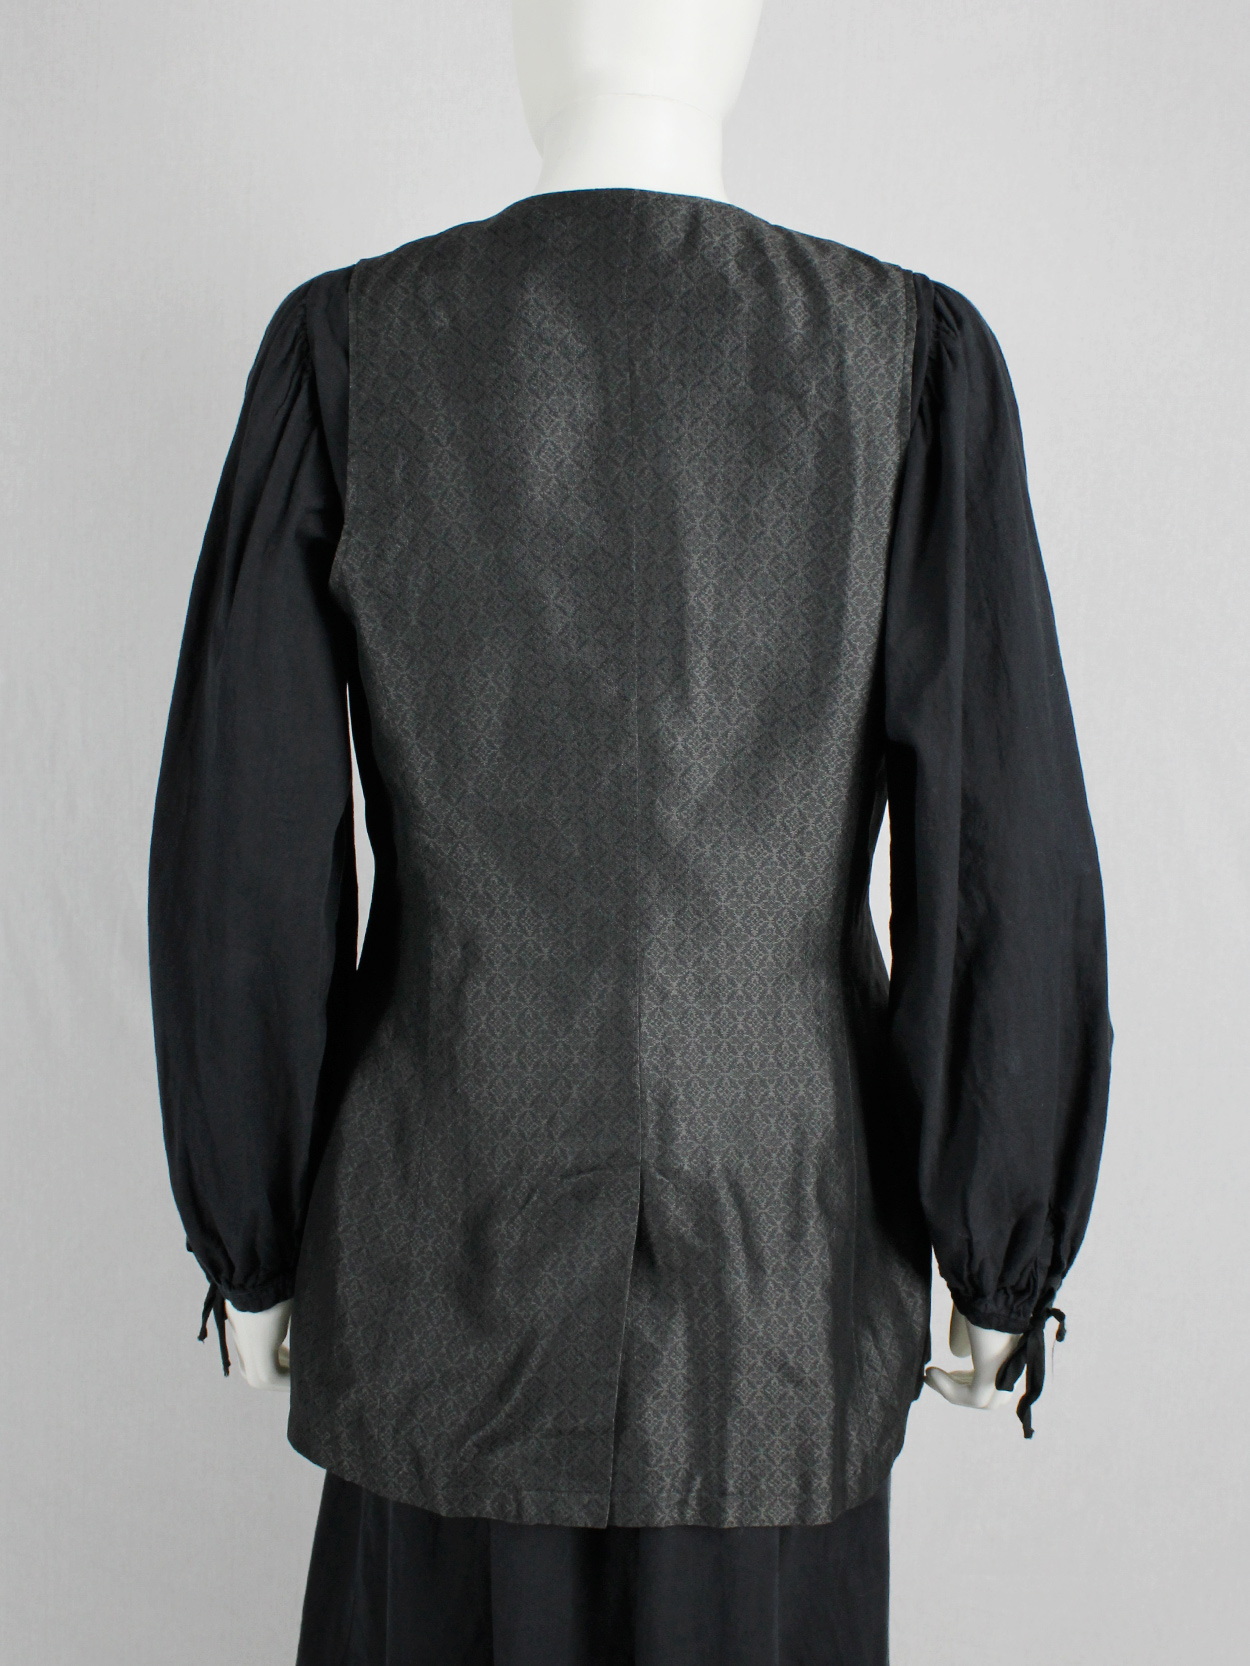 vaniita Dries Van Noten long brocade waistcoat in silver and black 1980s 80s (1)